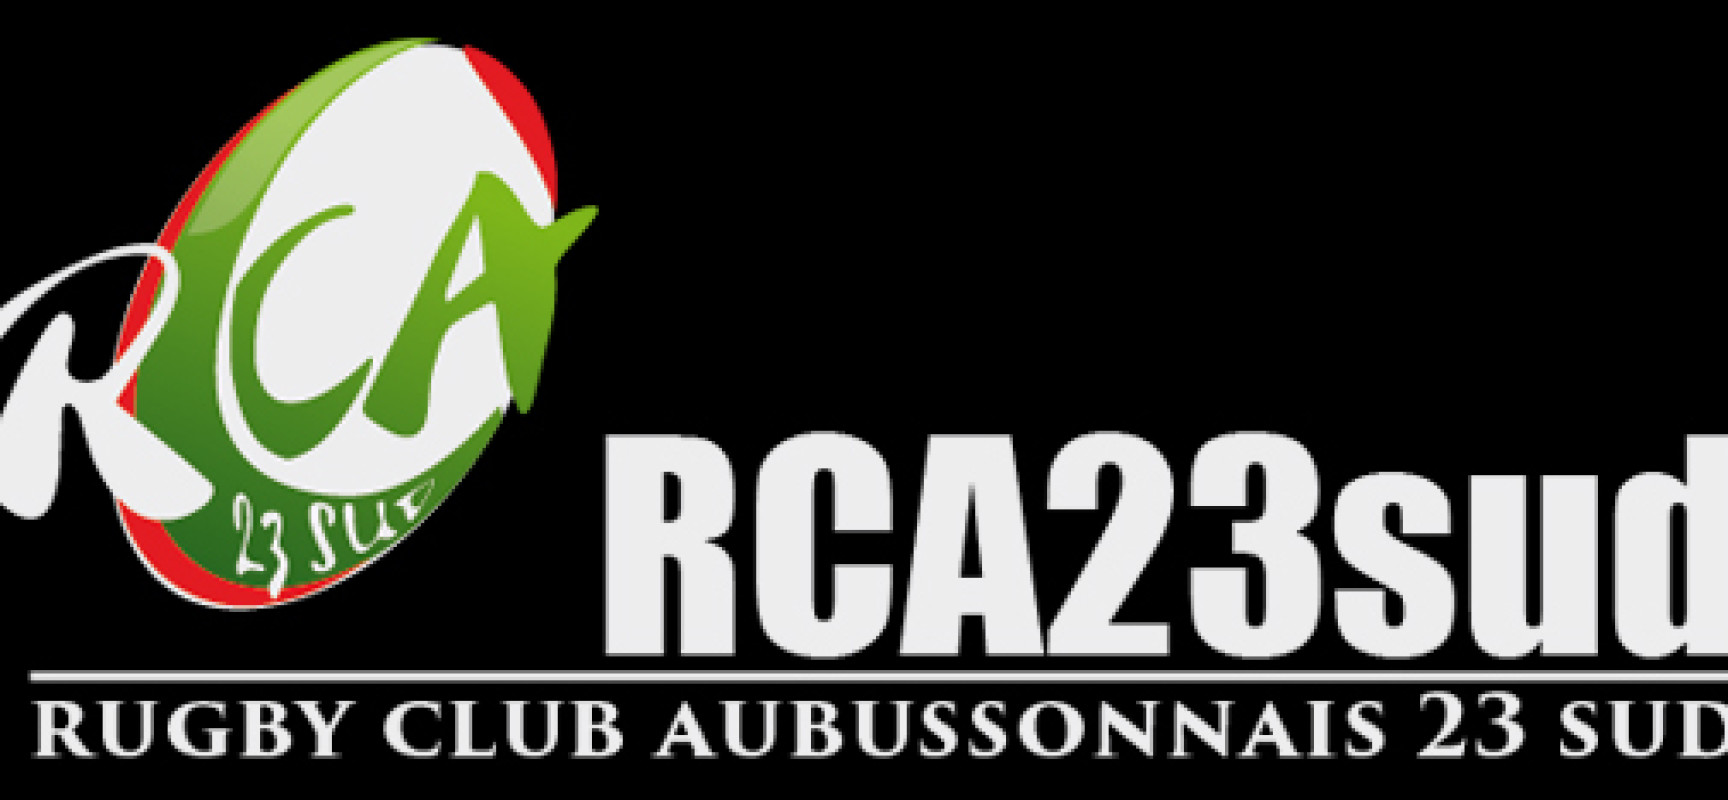 2 matchs de championnat cadets #Aubusson #Rugby #RCA23Sud